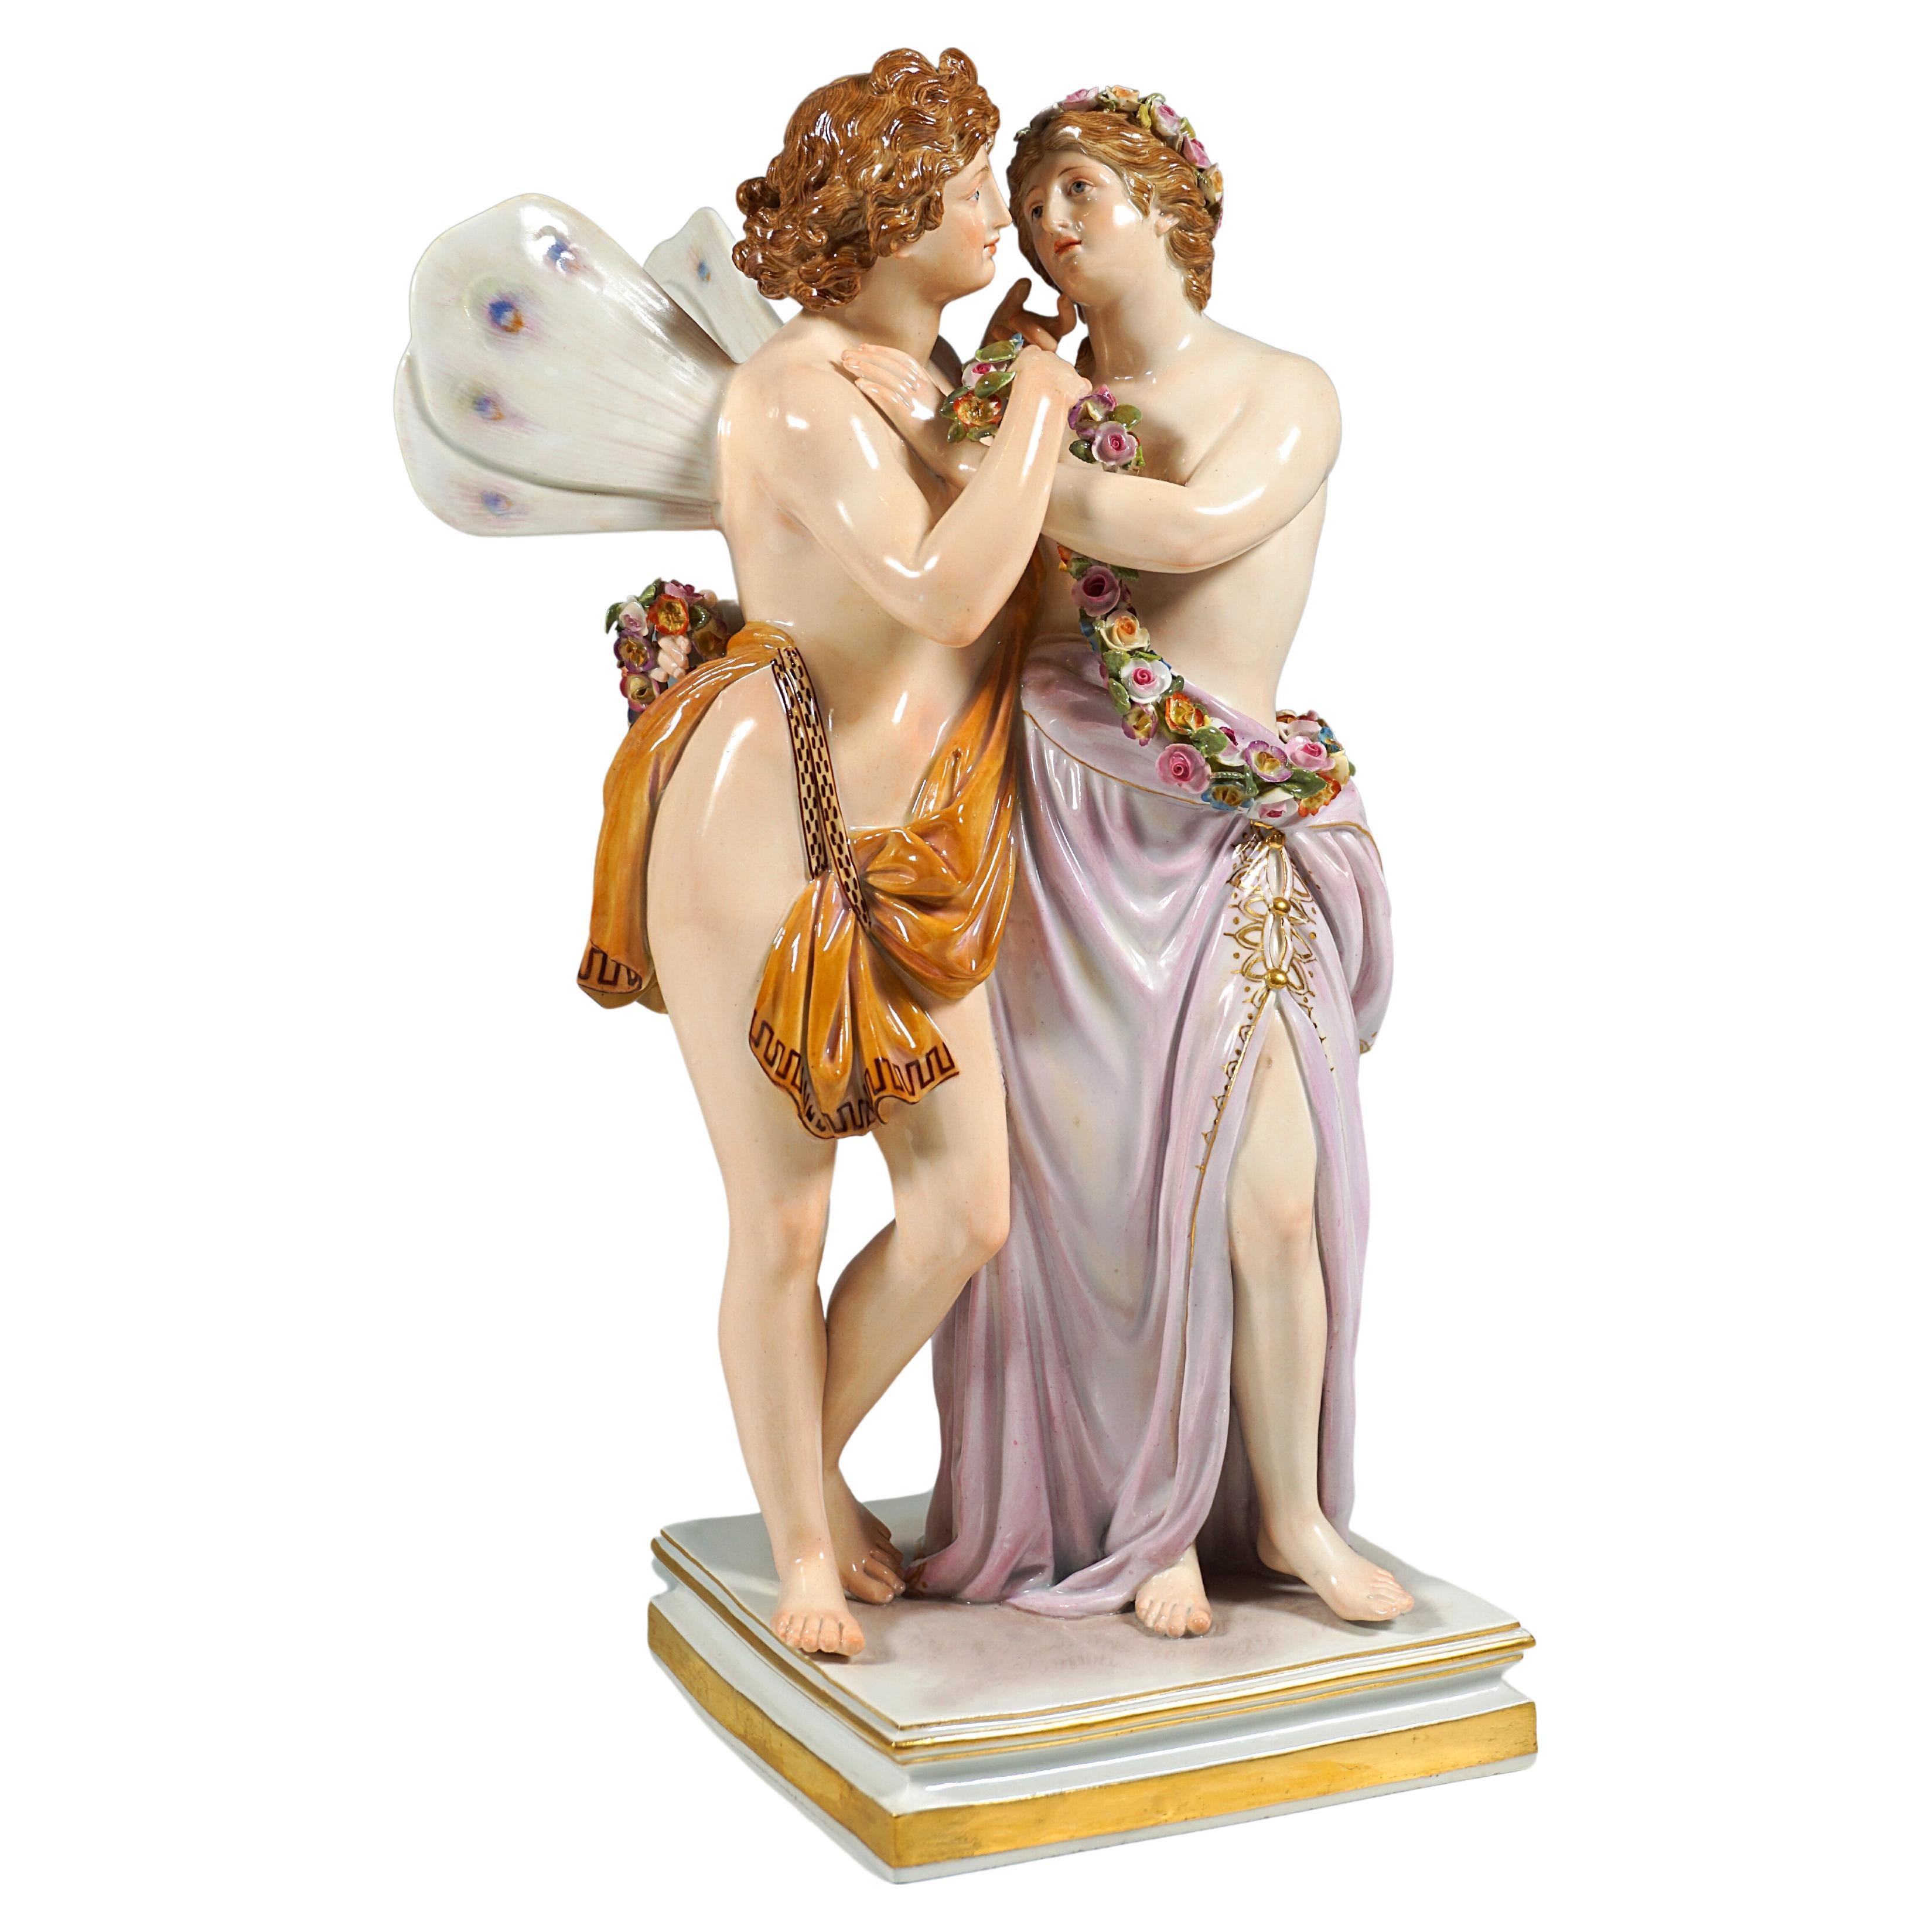 Meissen Porcelain Large Figurine Group 'Zephyr & Flora' von C.G. Juechtzer C.1860